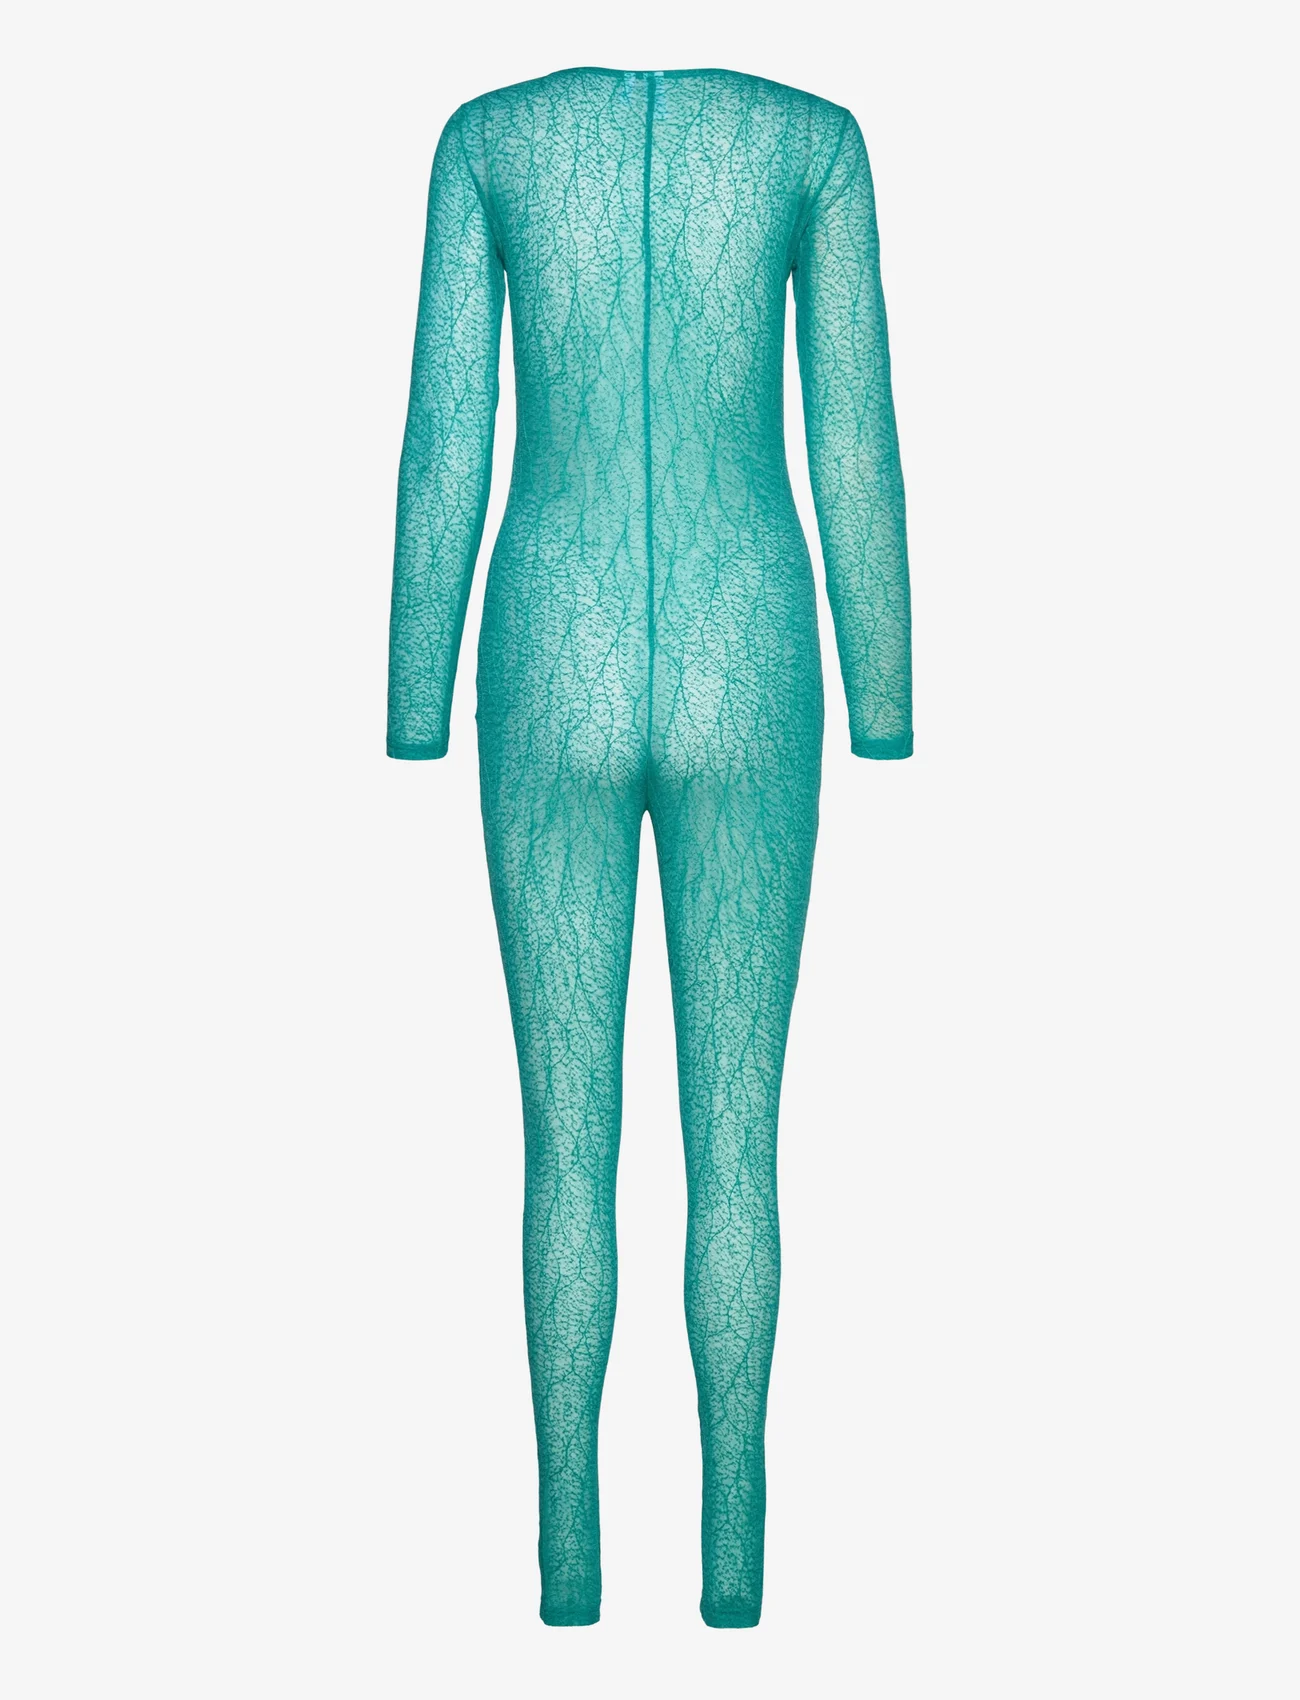 Résumé - RubenaRS Bodysuit - women - turquoise - 1